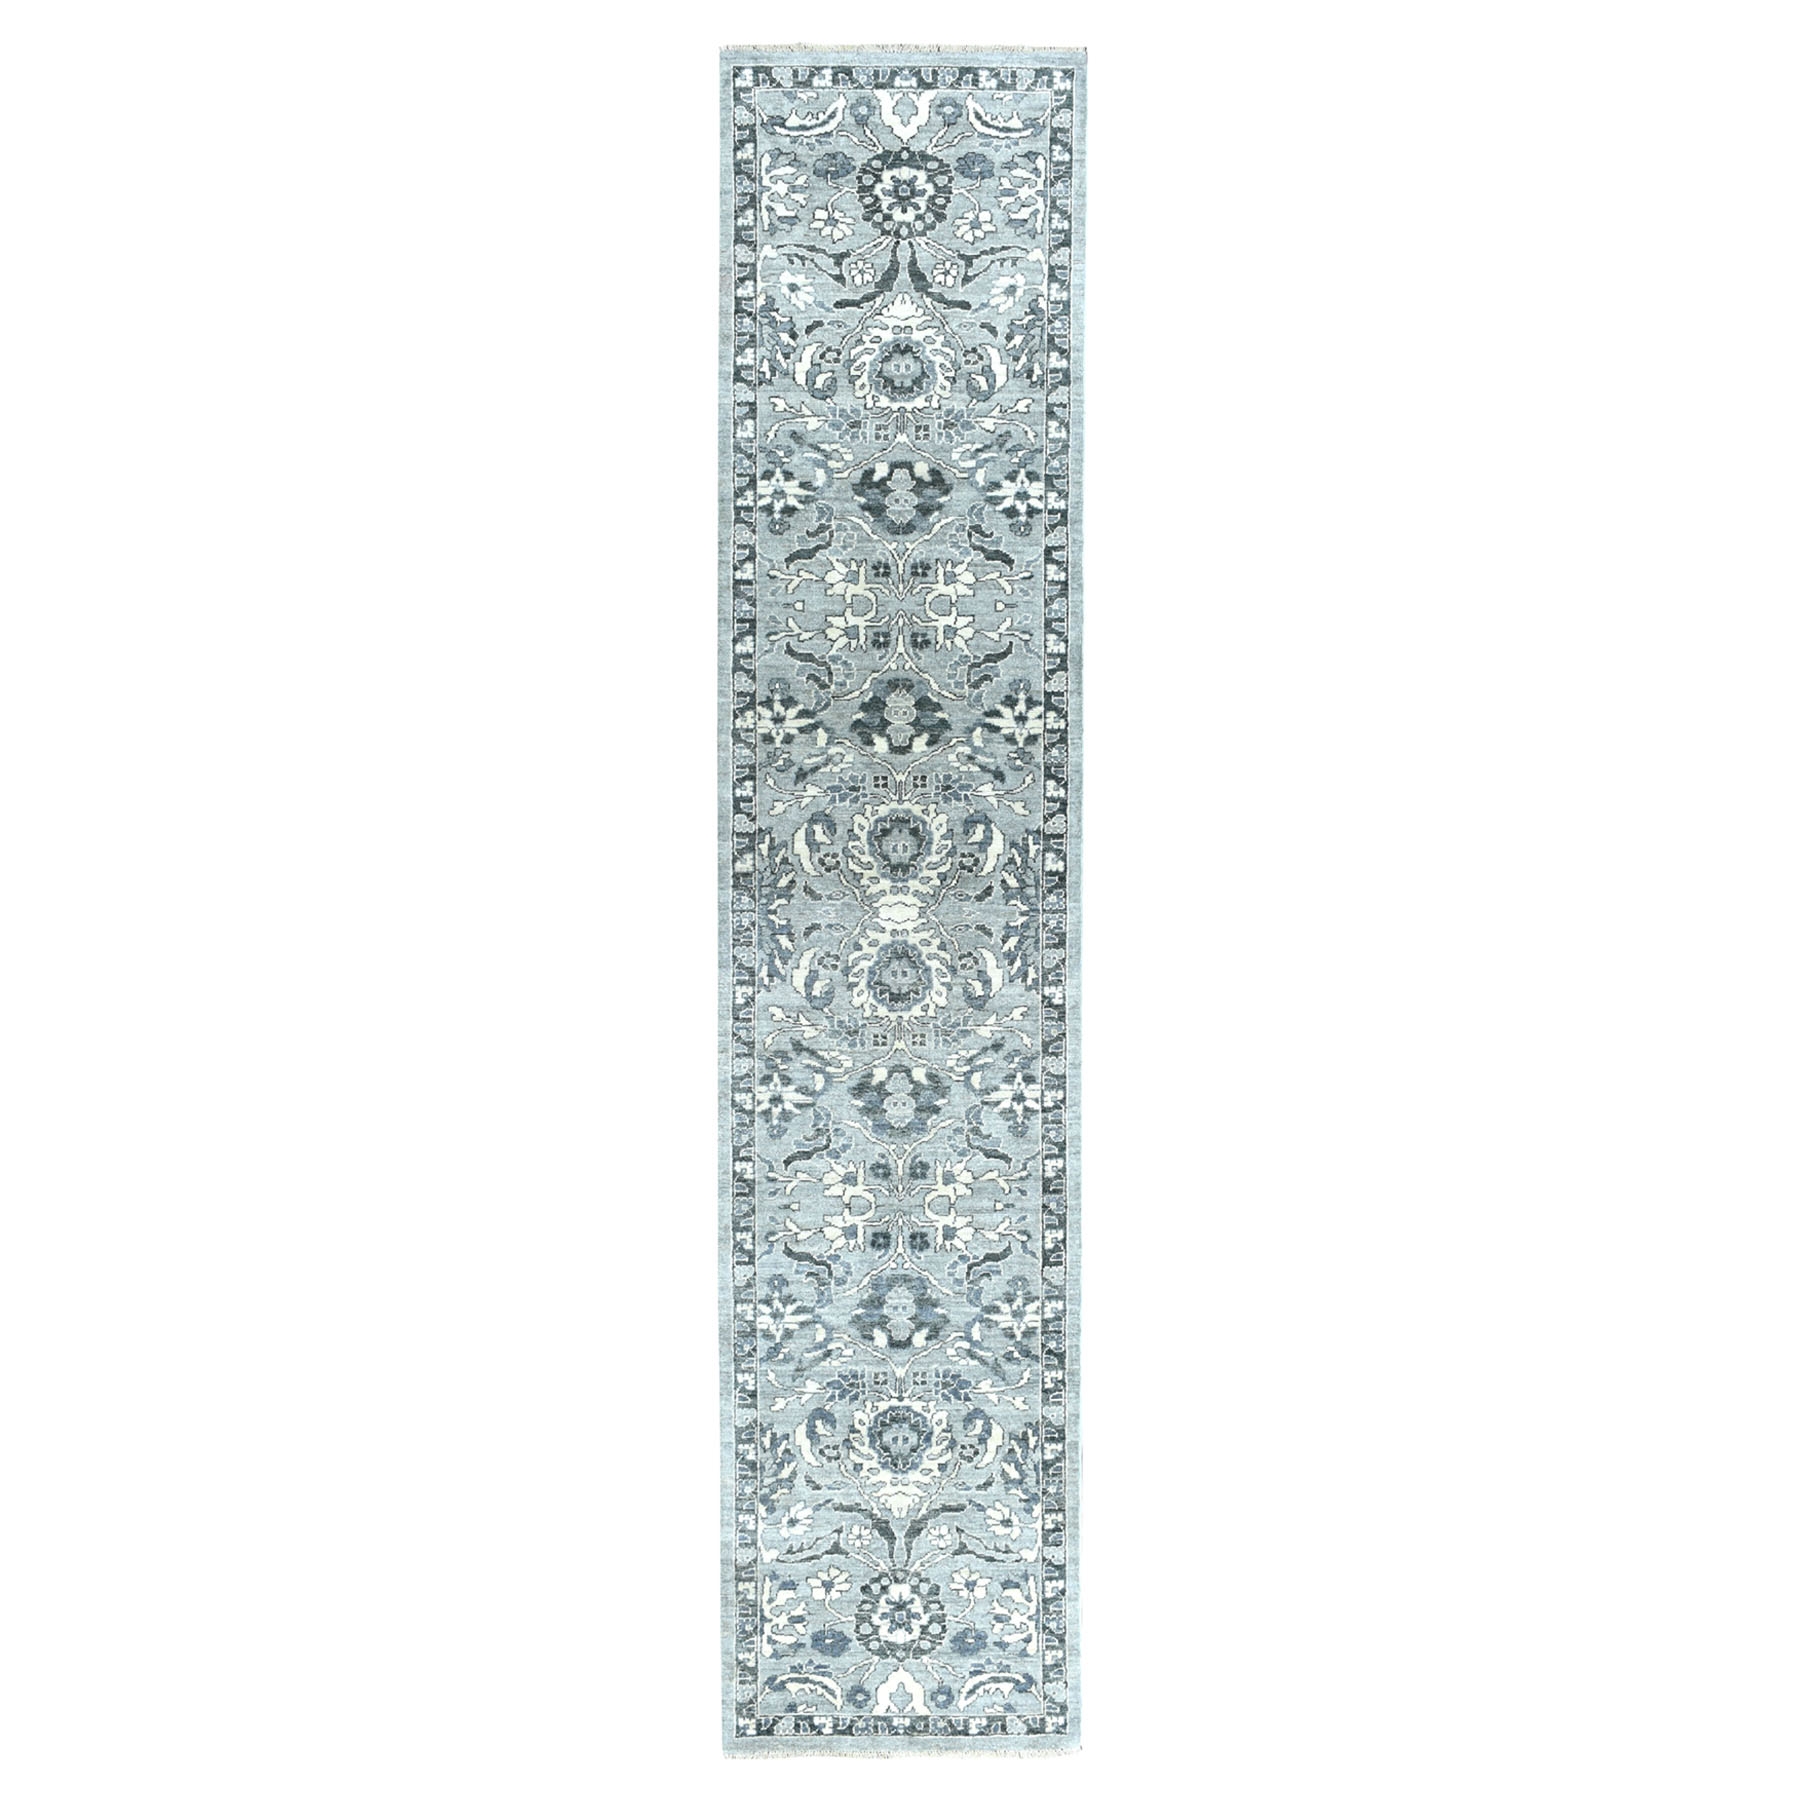 2'5"x11'7" Undyed Natural Wool Mahal Design Runner Hand Woven Oriental Rug 